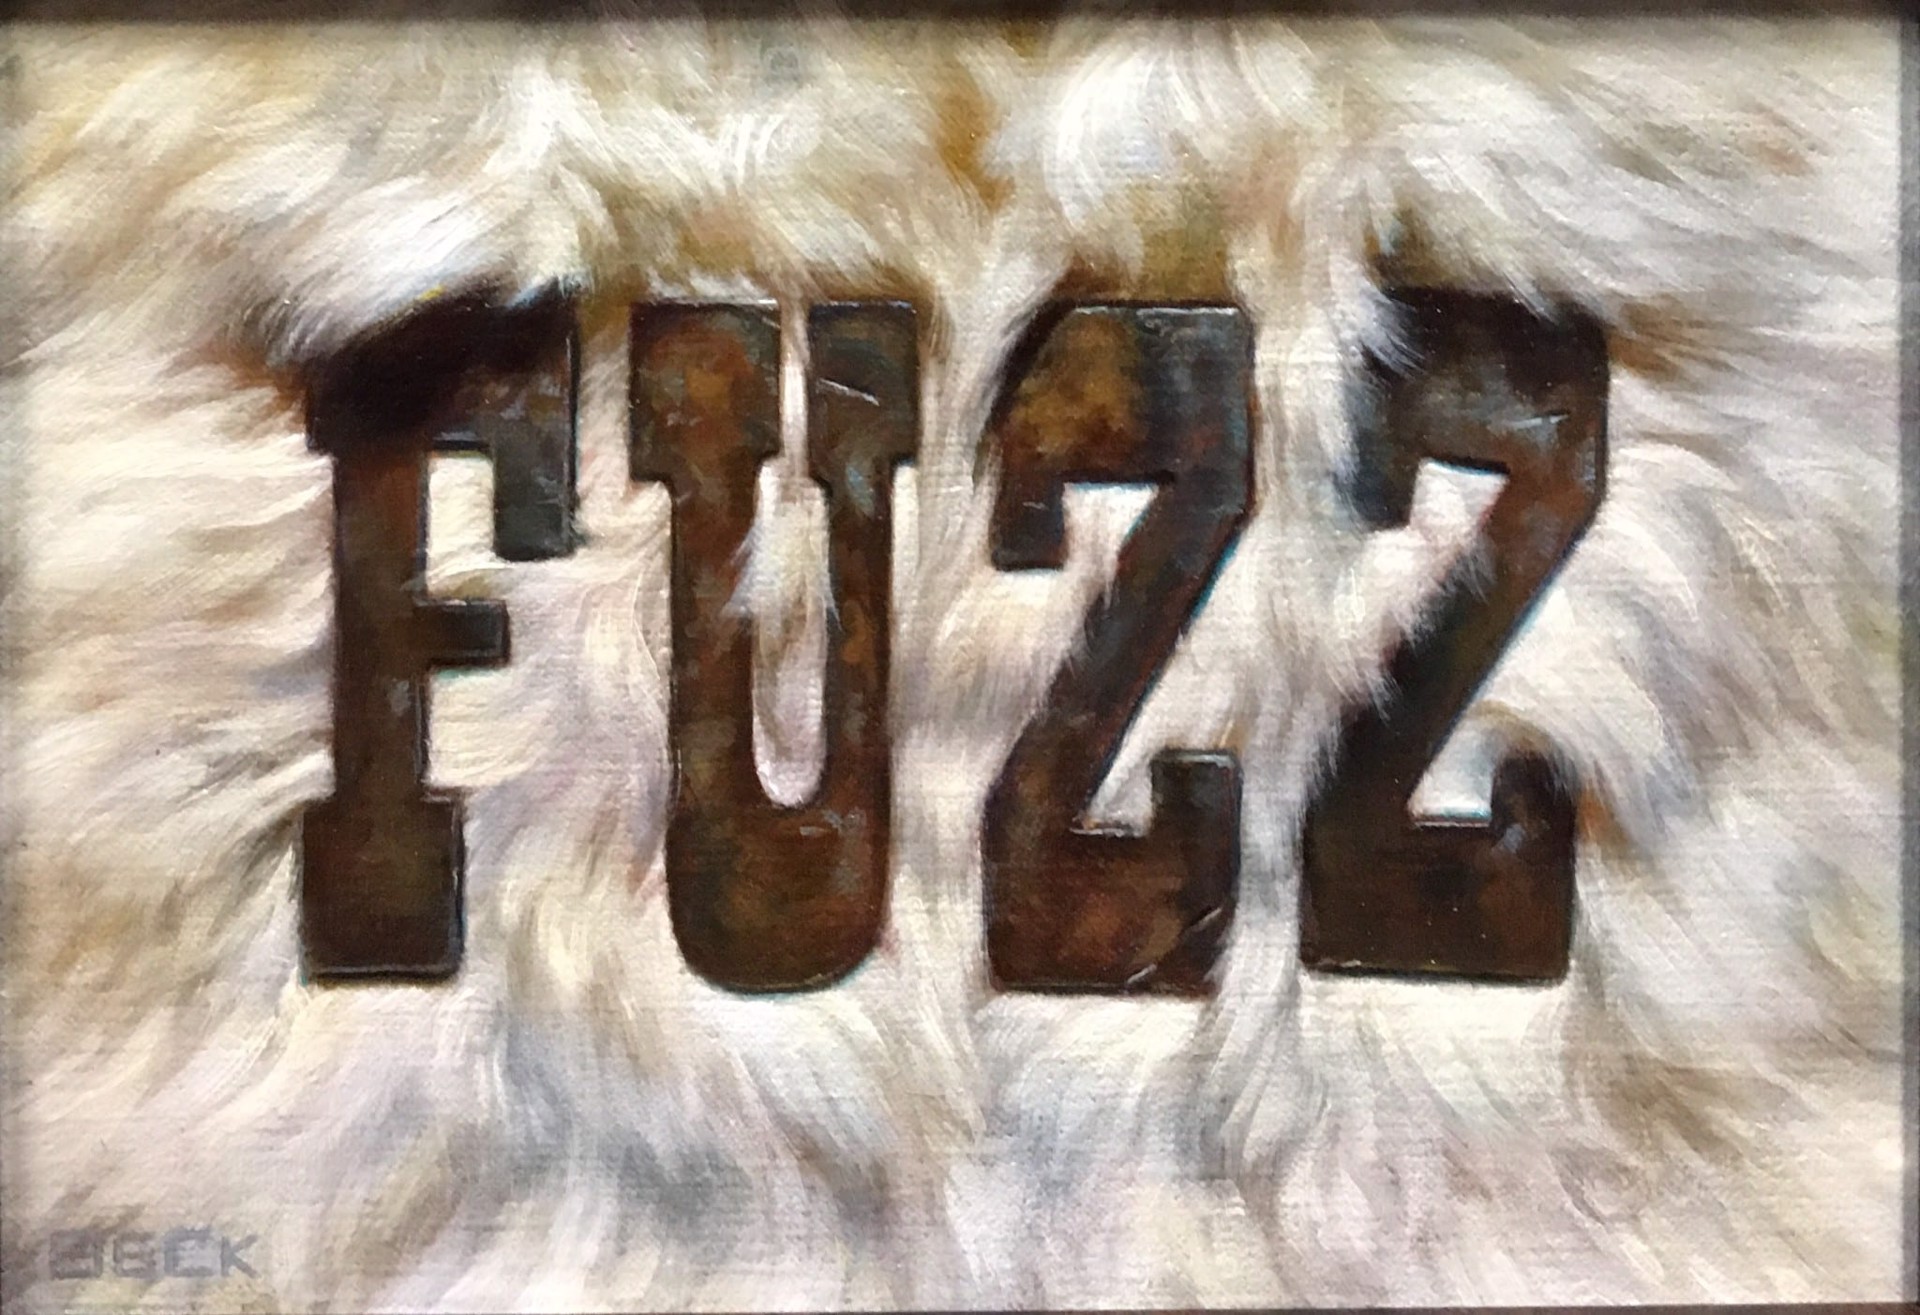 Fuzz by Julie Beck